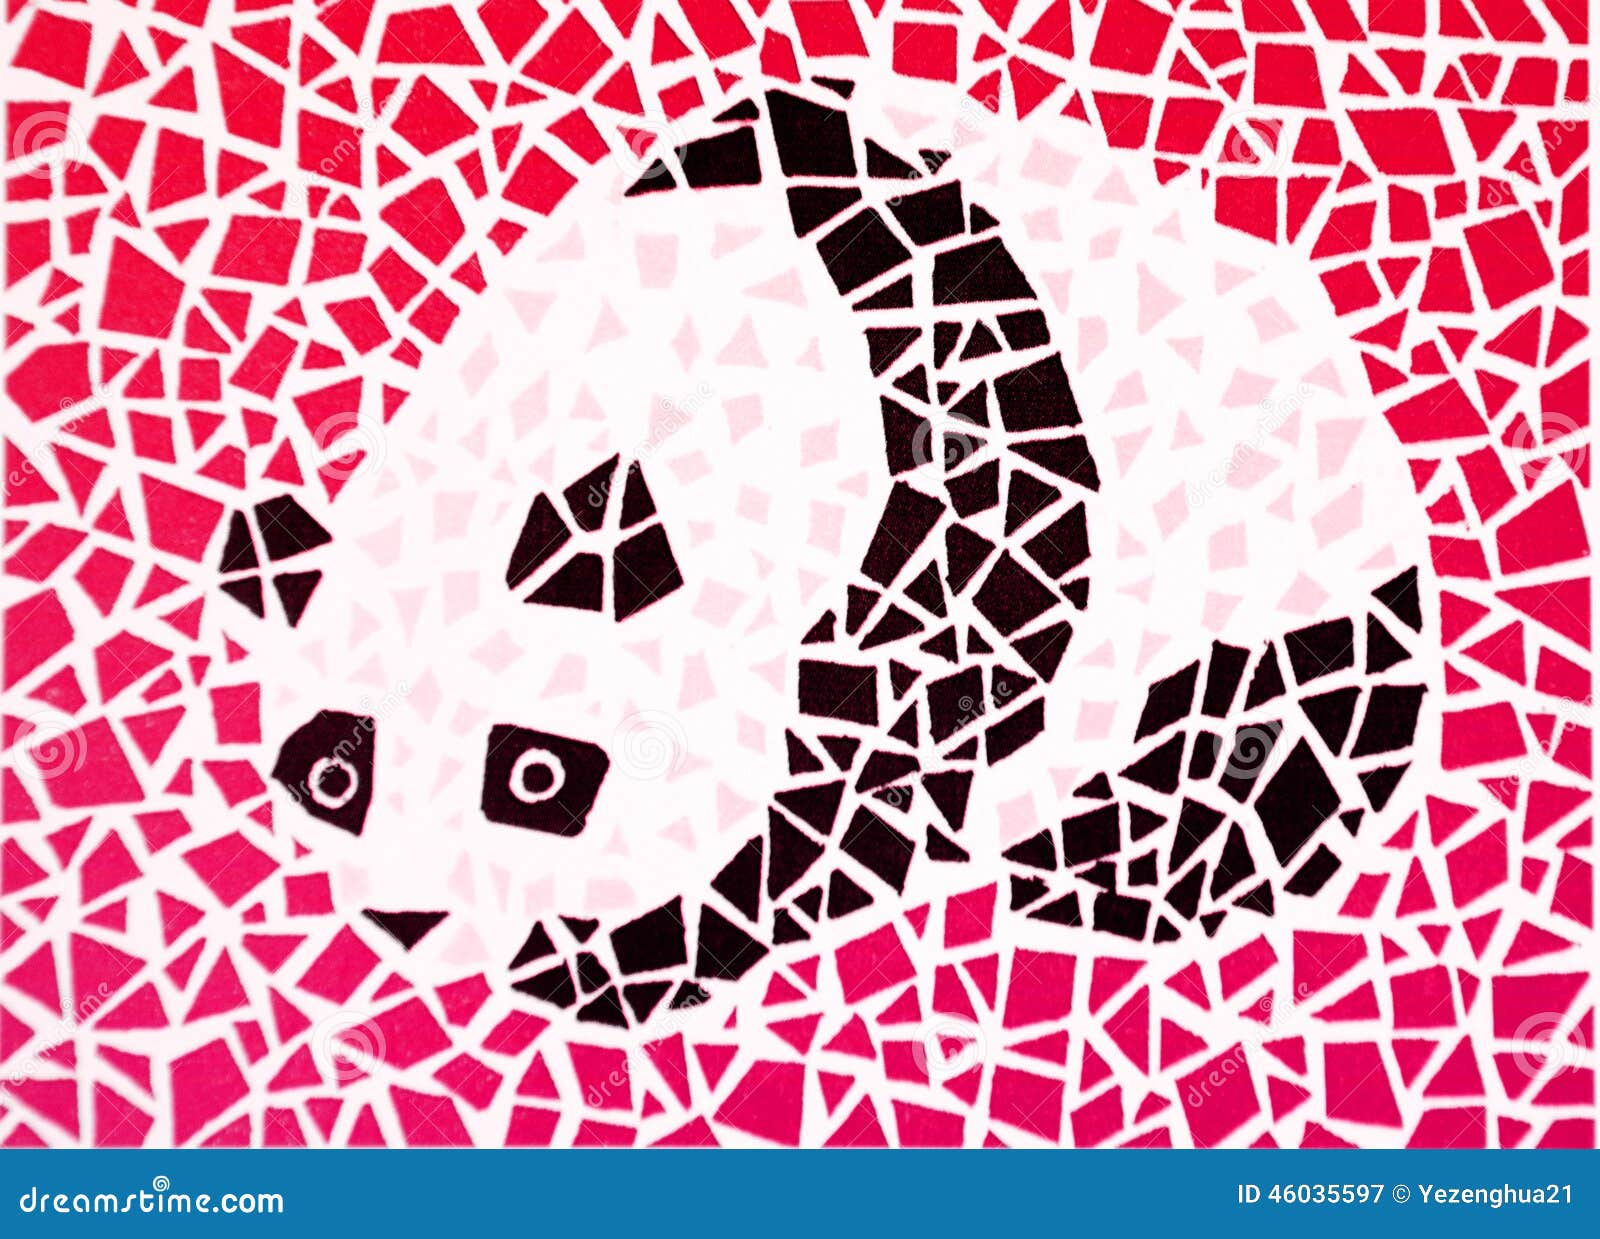 Color blind test - panda stock illustration. Illustration of elevate -  46035597